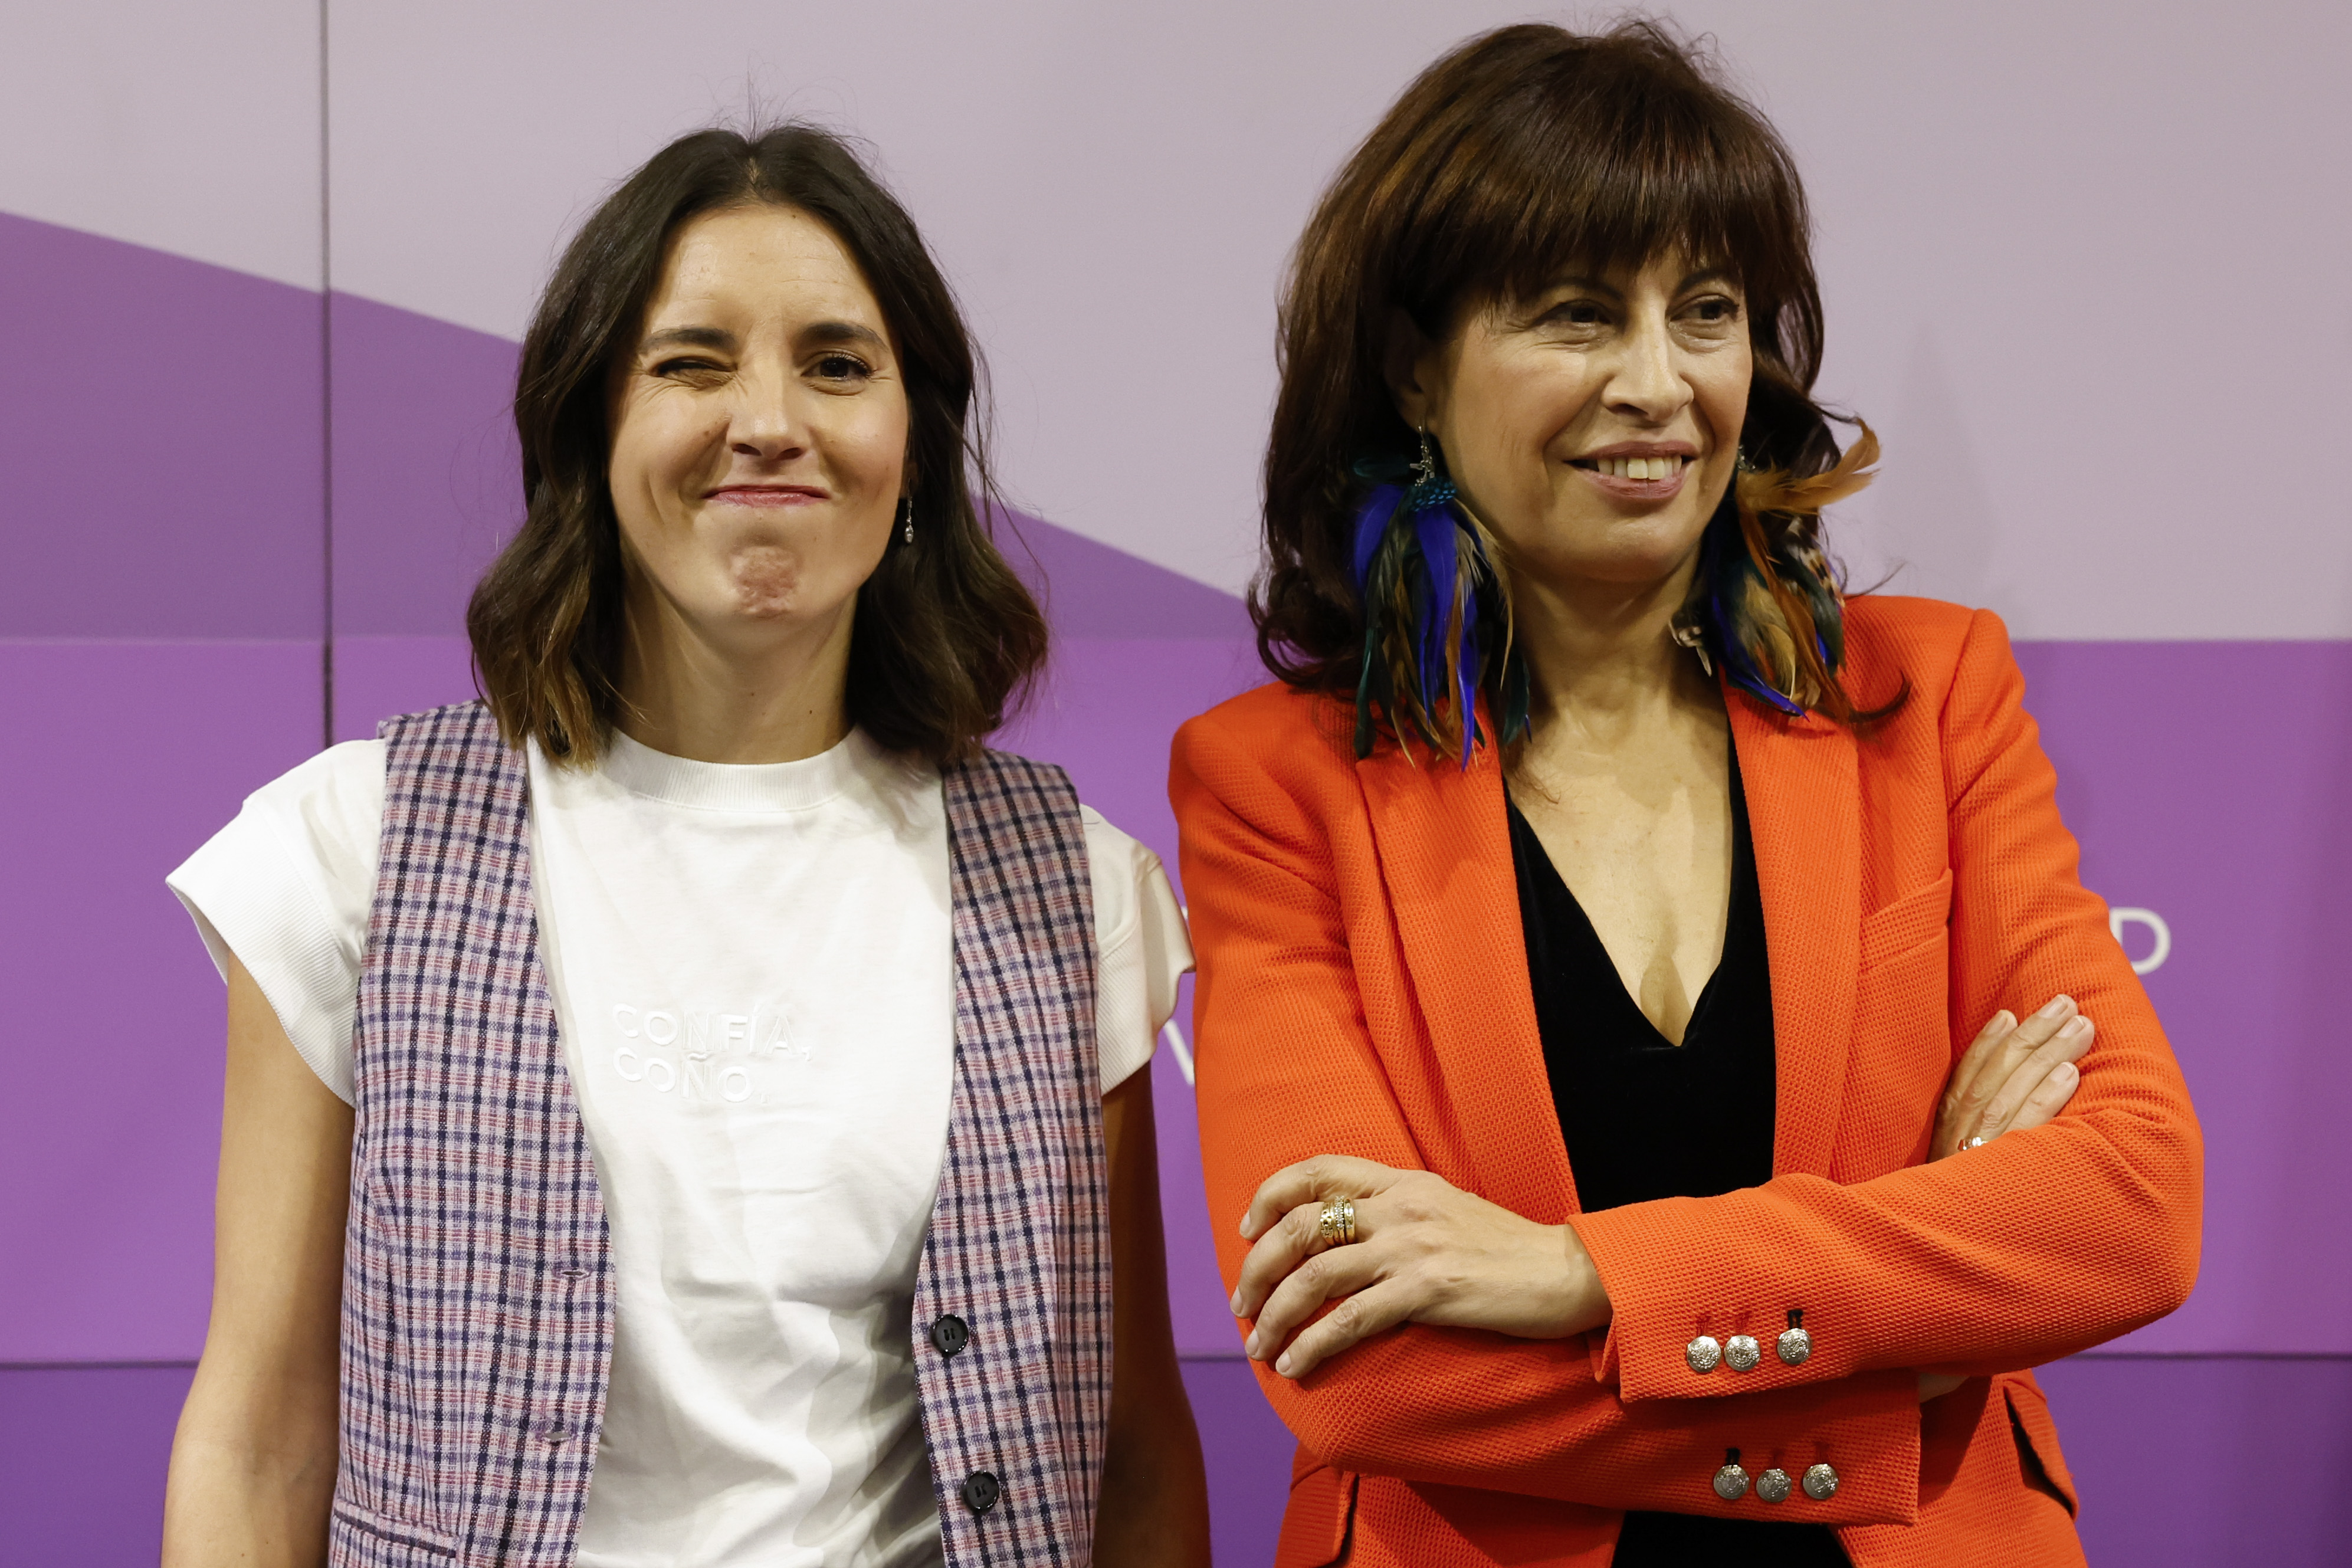 La nueva ministra de Igualdad, Ana Redondo (derecha), antes de recibir la cartera del Ministerio de manos de su antecesora, Irene Montero, este martes en Madrid.